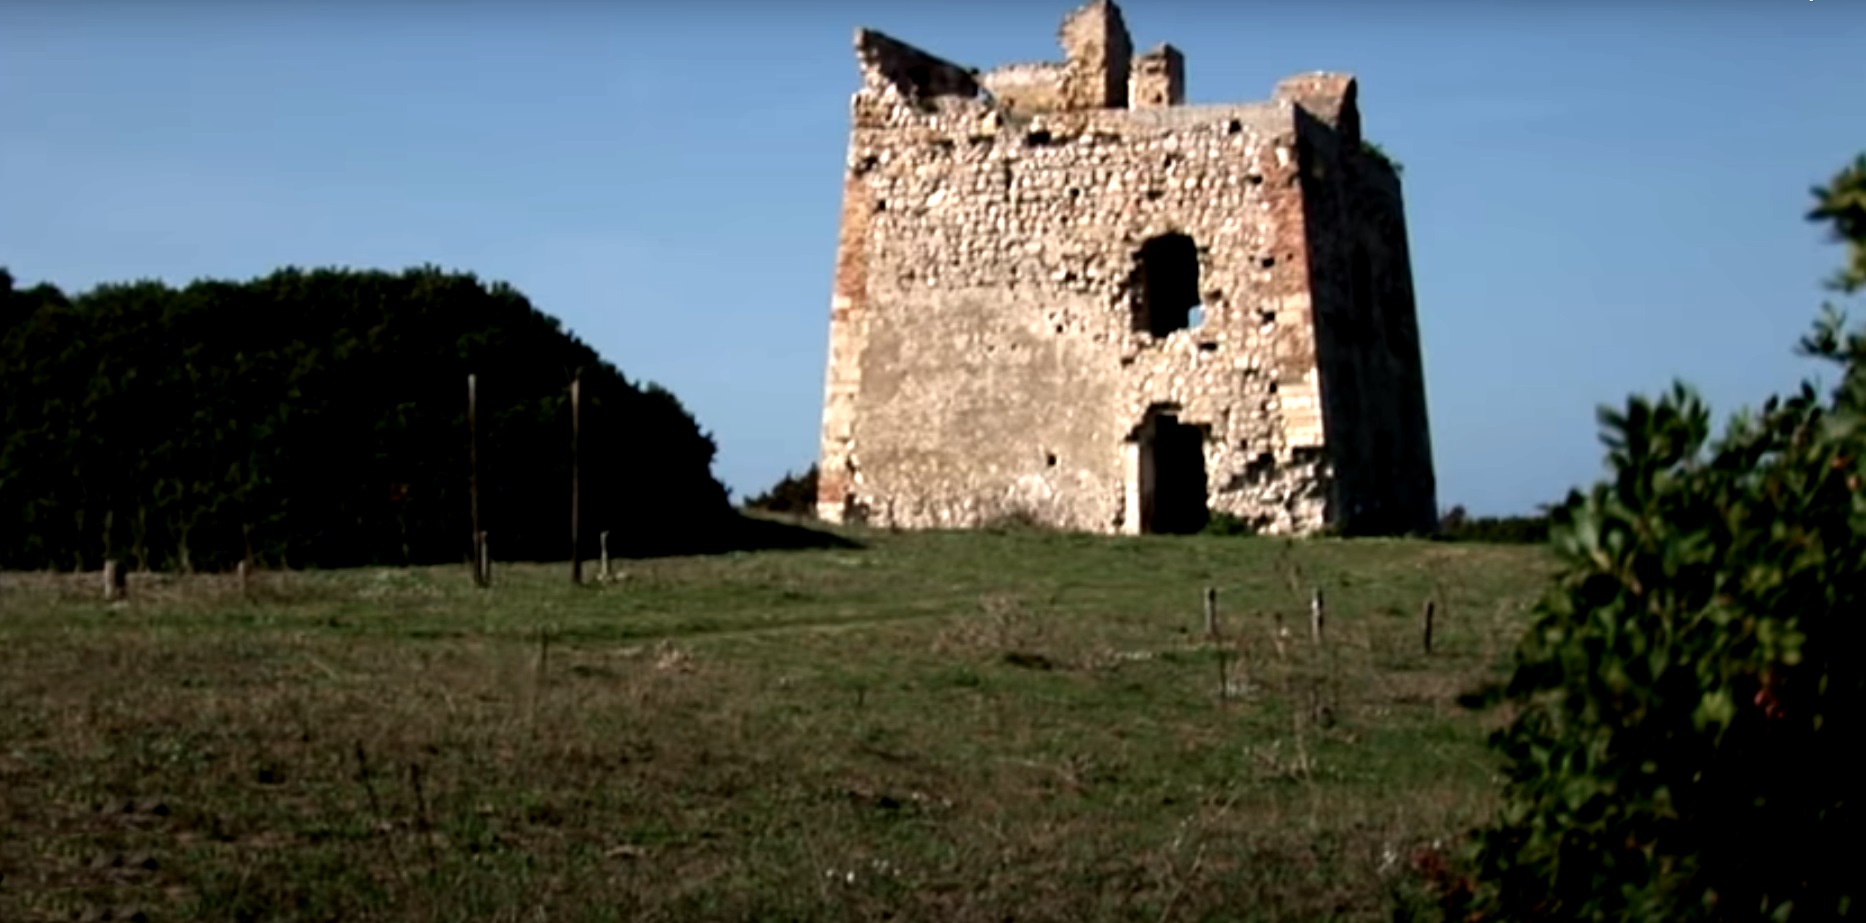 Parco Nazionale del Gargano: torre Scampamorto Lesina